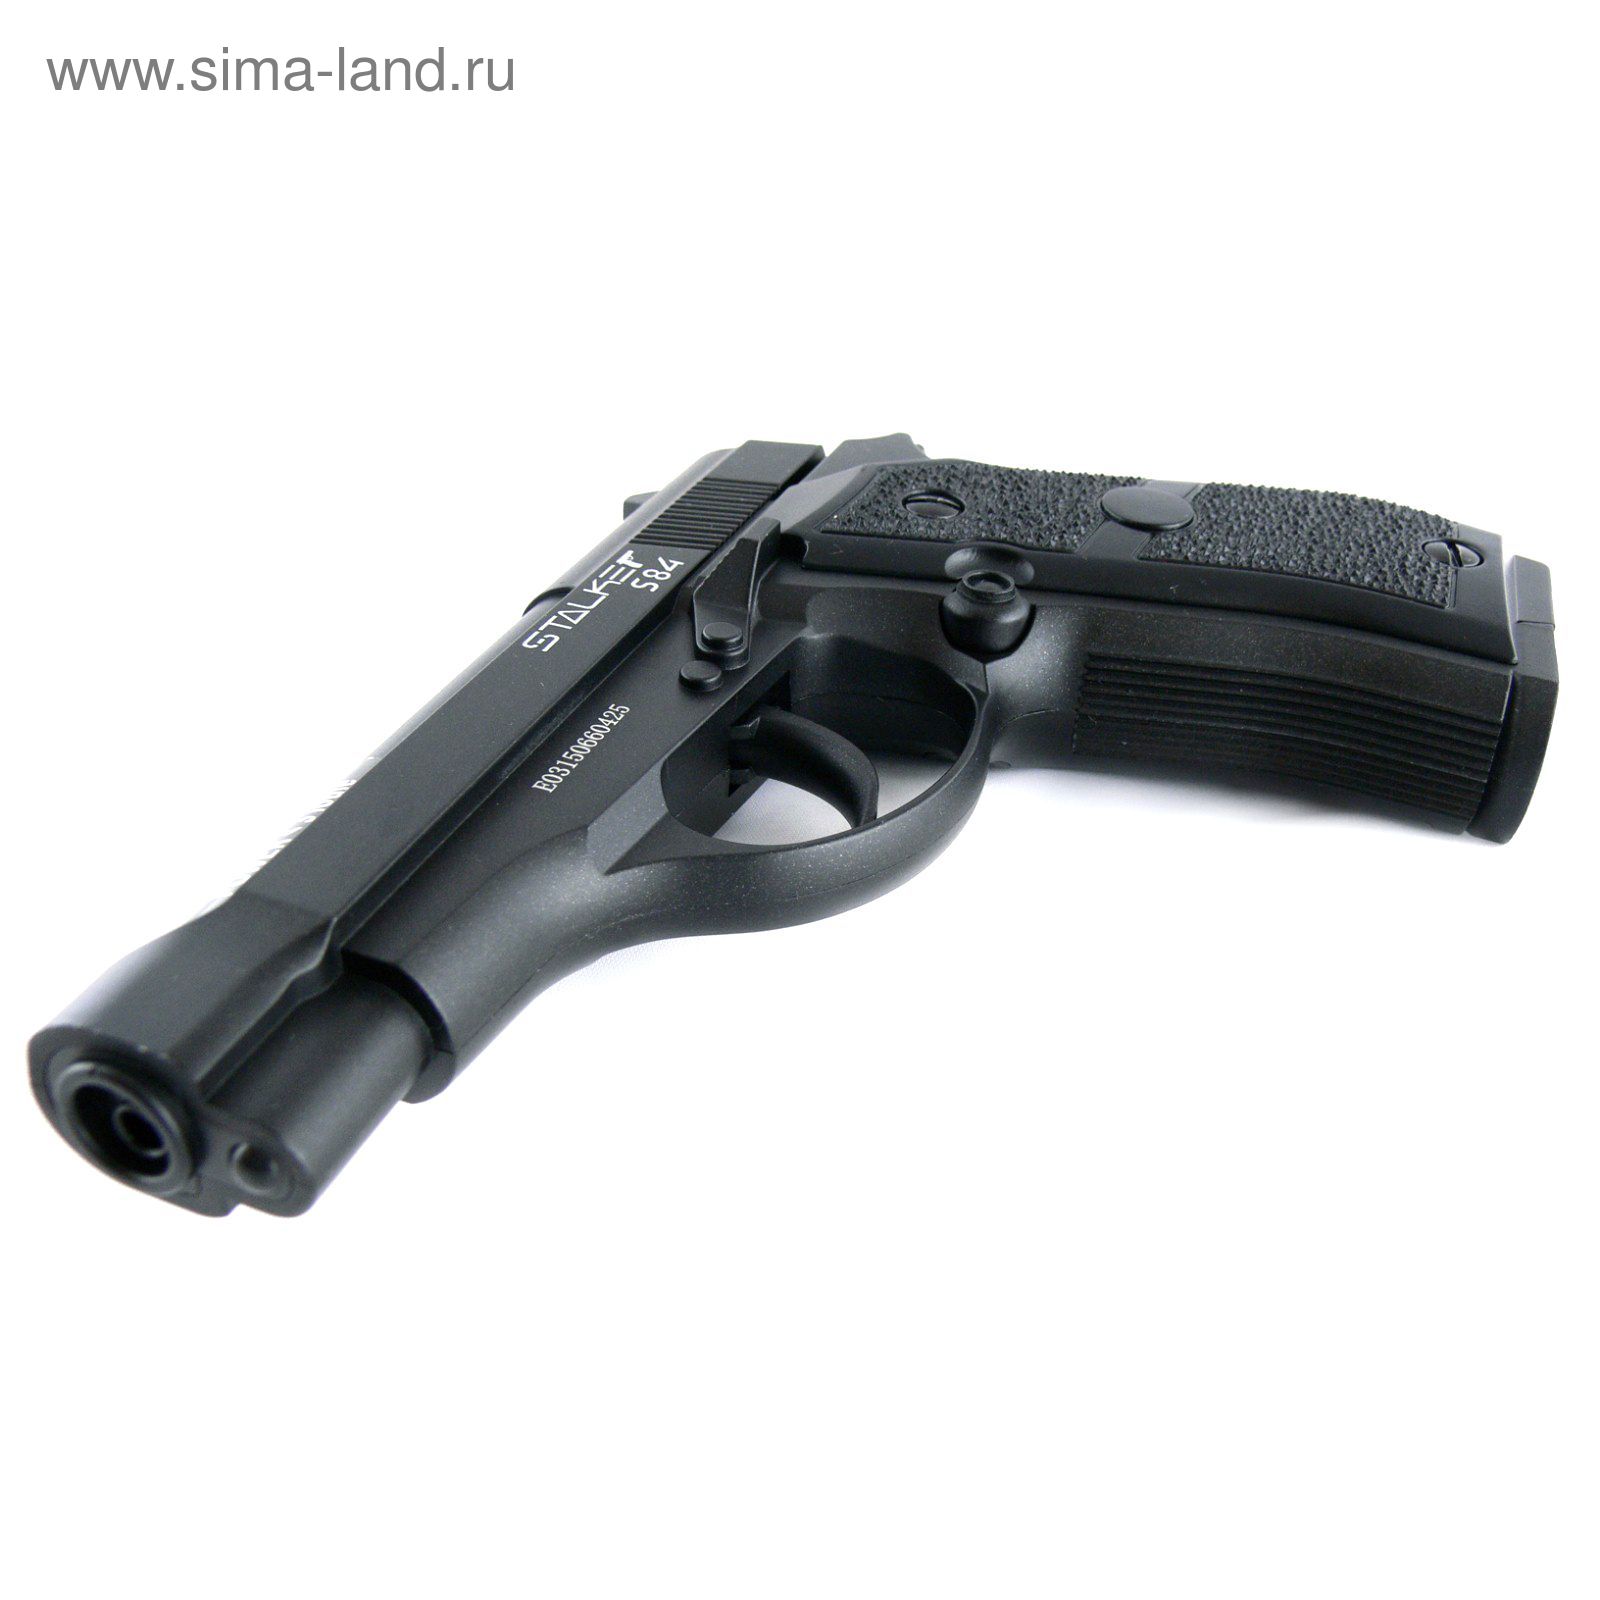 Пистолет пневм. Stalker S84 (аналог "Beretta 84") к.4,5мм, металл, 120 м/с, черный, картон.коробка